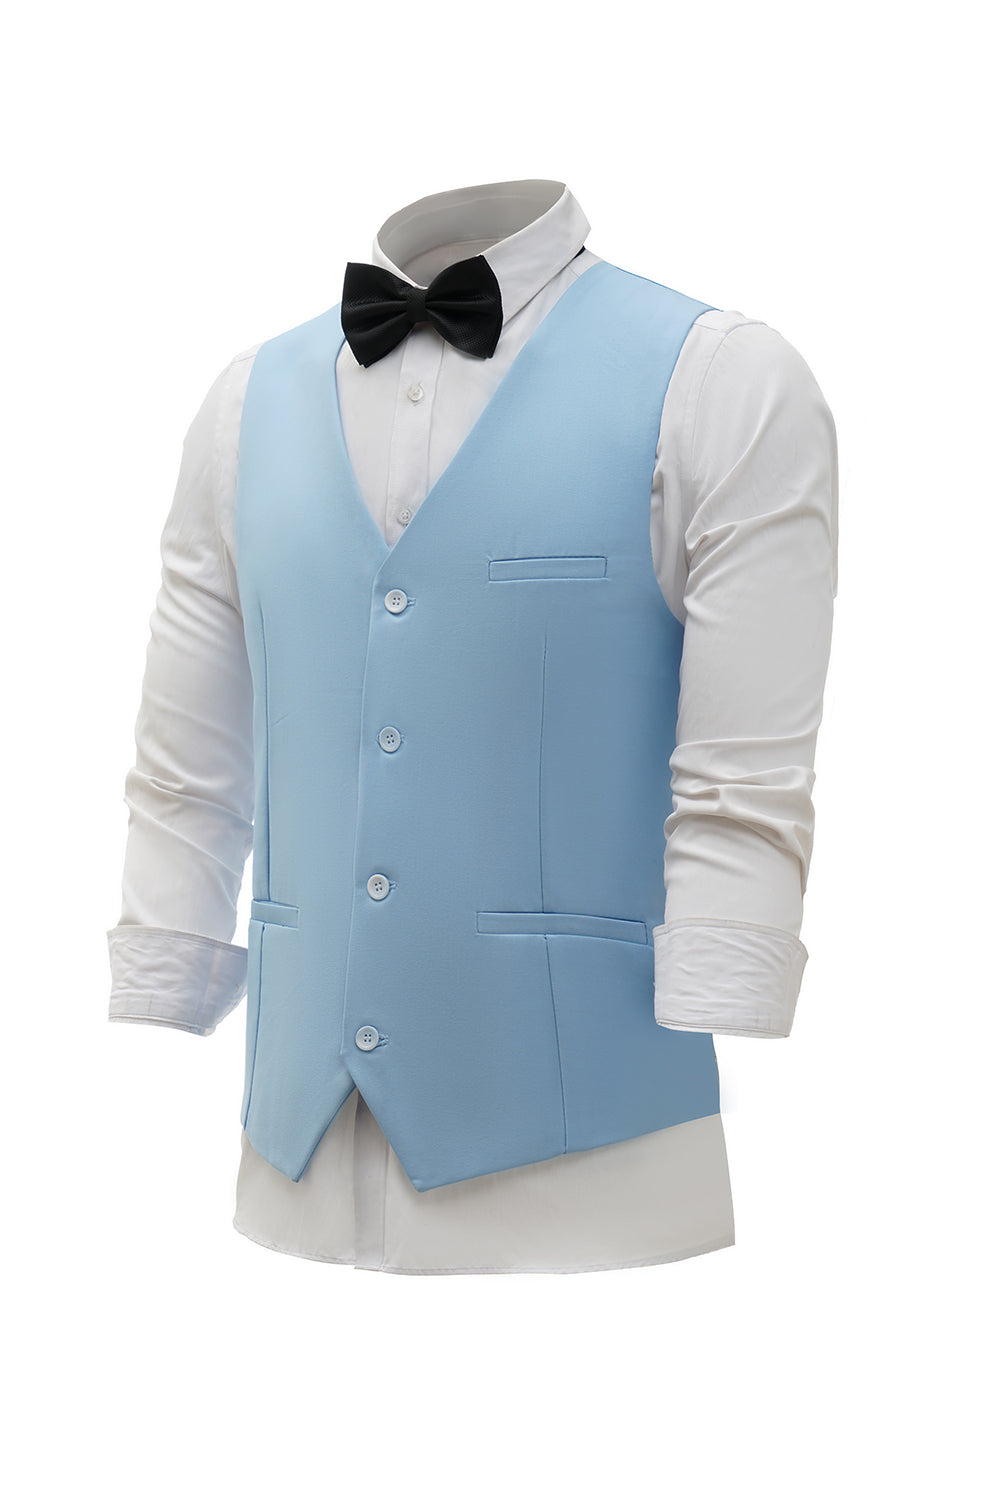 Light Blue Single Breasted Shawl Lapel Men's Suit Vest